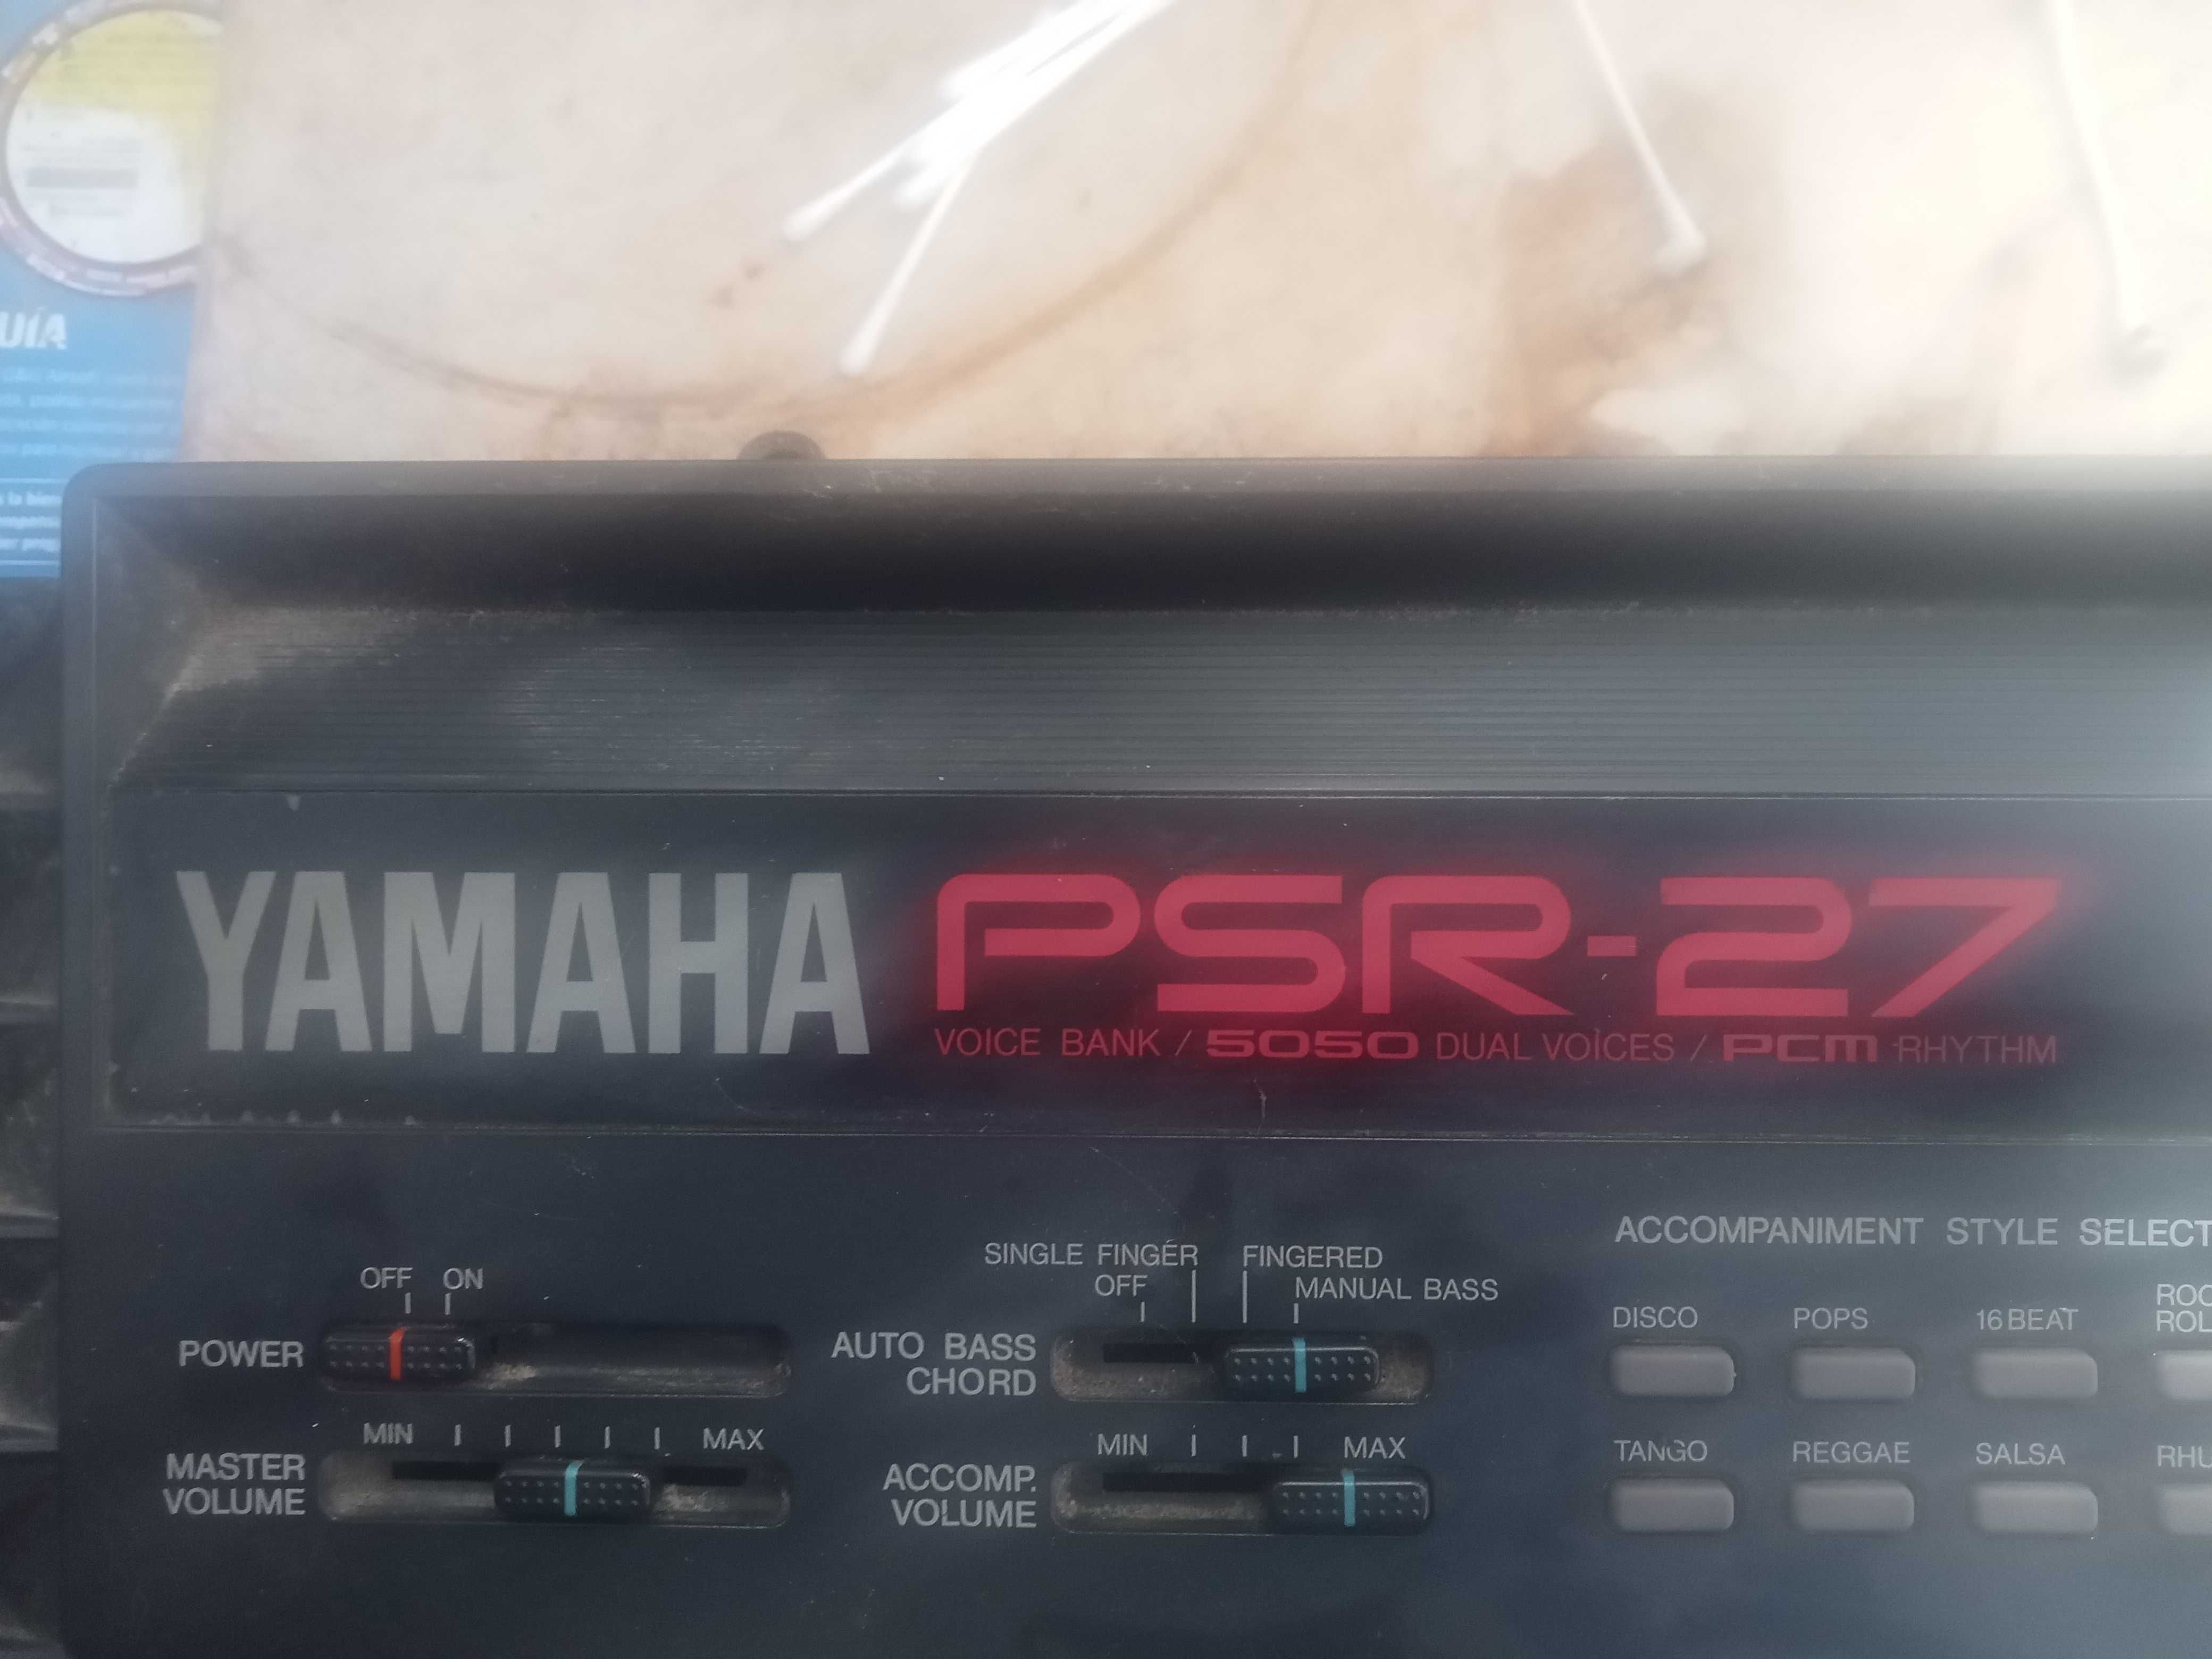 Órgão Yamaha psr-27